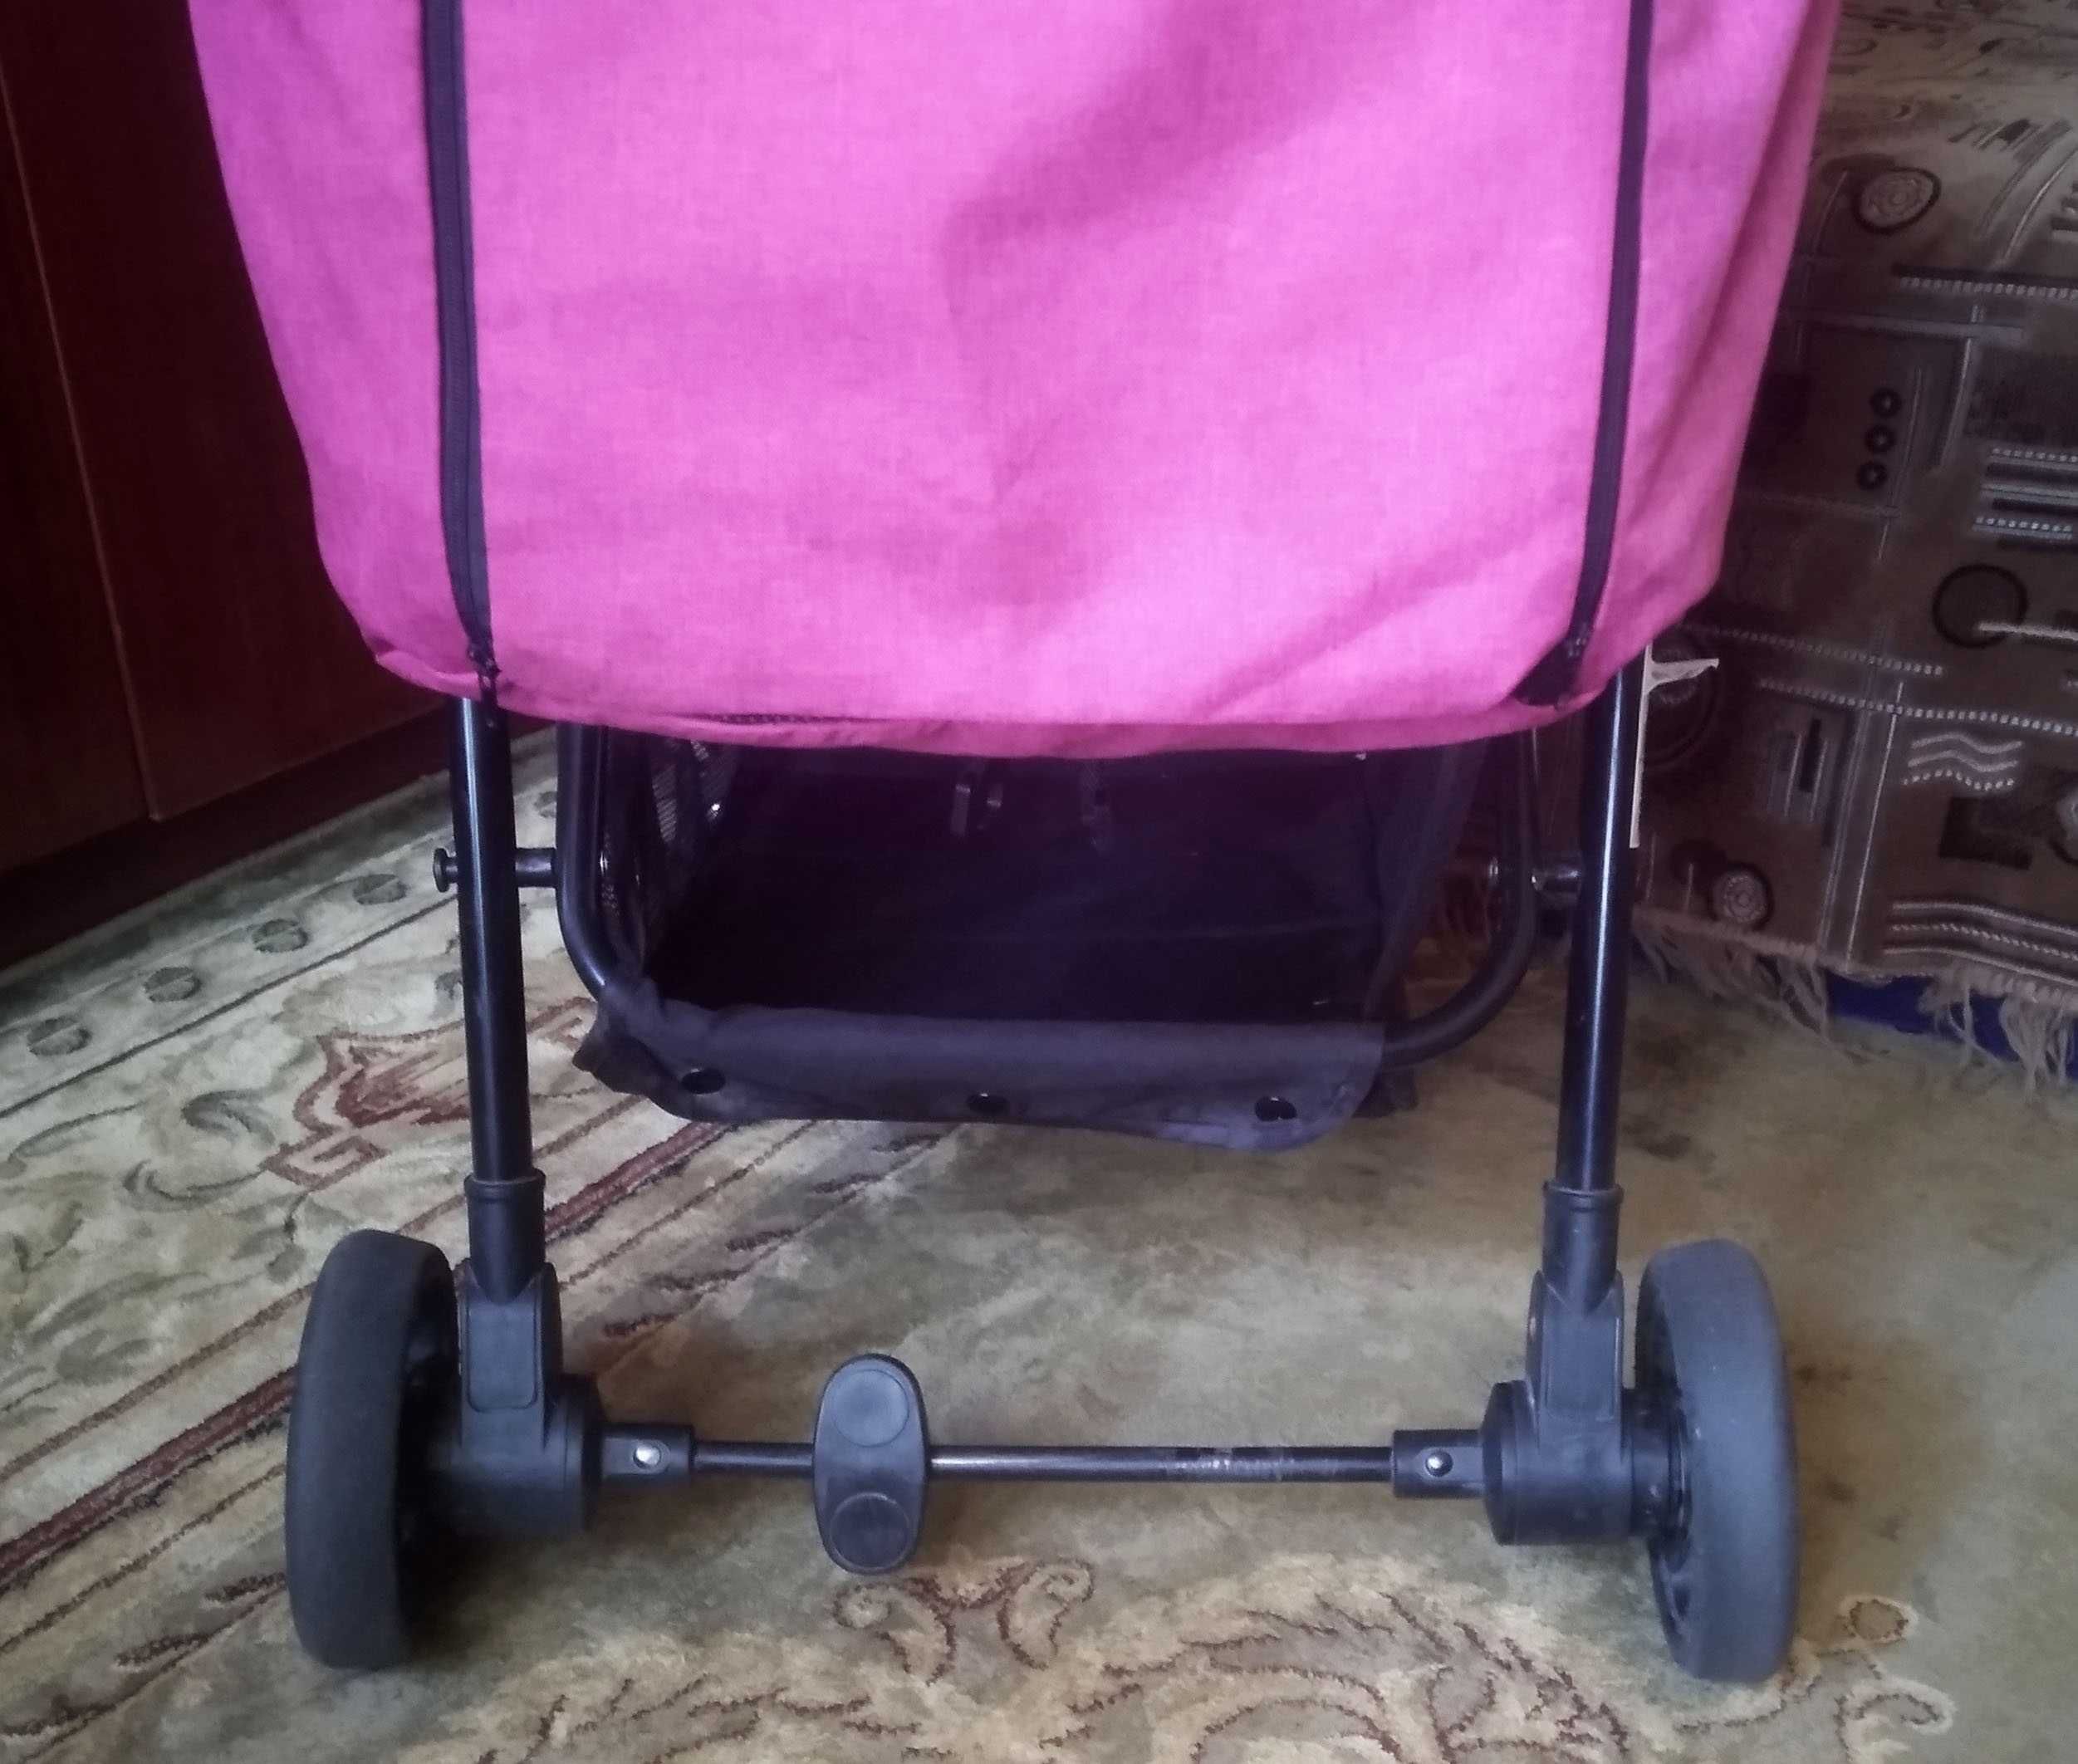 Детская коляска Bambi M 4249 Pink. Возм. обмен